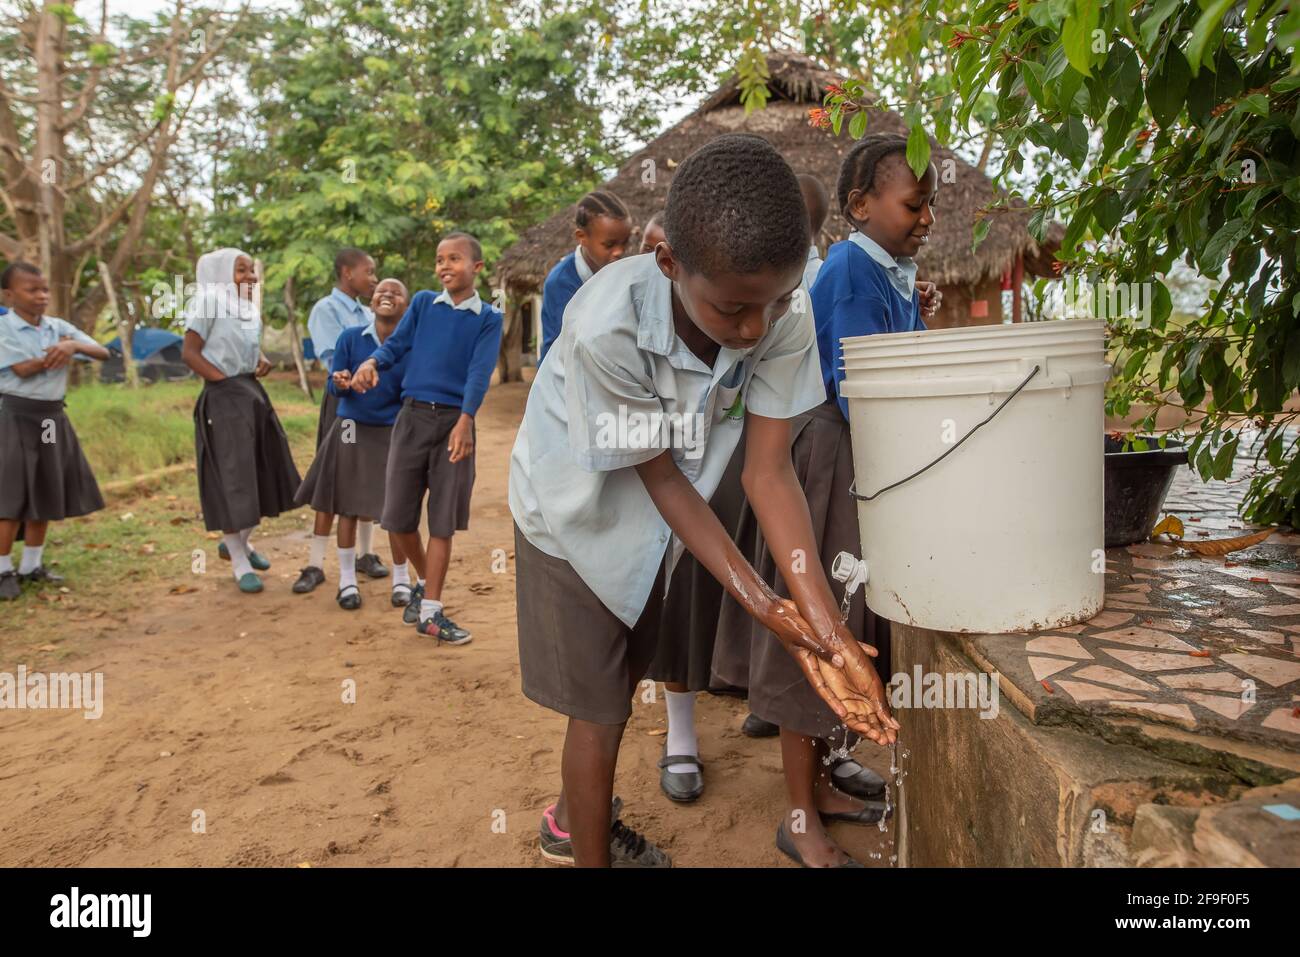 Dodoma, Tansania. 08-18-2019. Ein afrikanischer Junge wascht sich die Hände, während andere Studenten Spaß haben, während sie in der Schlange auf ihre Reihe warten. Stockfoto